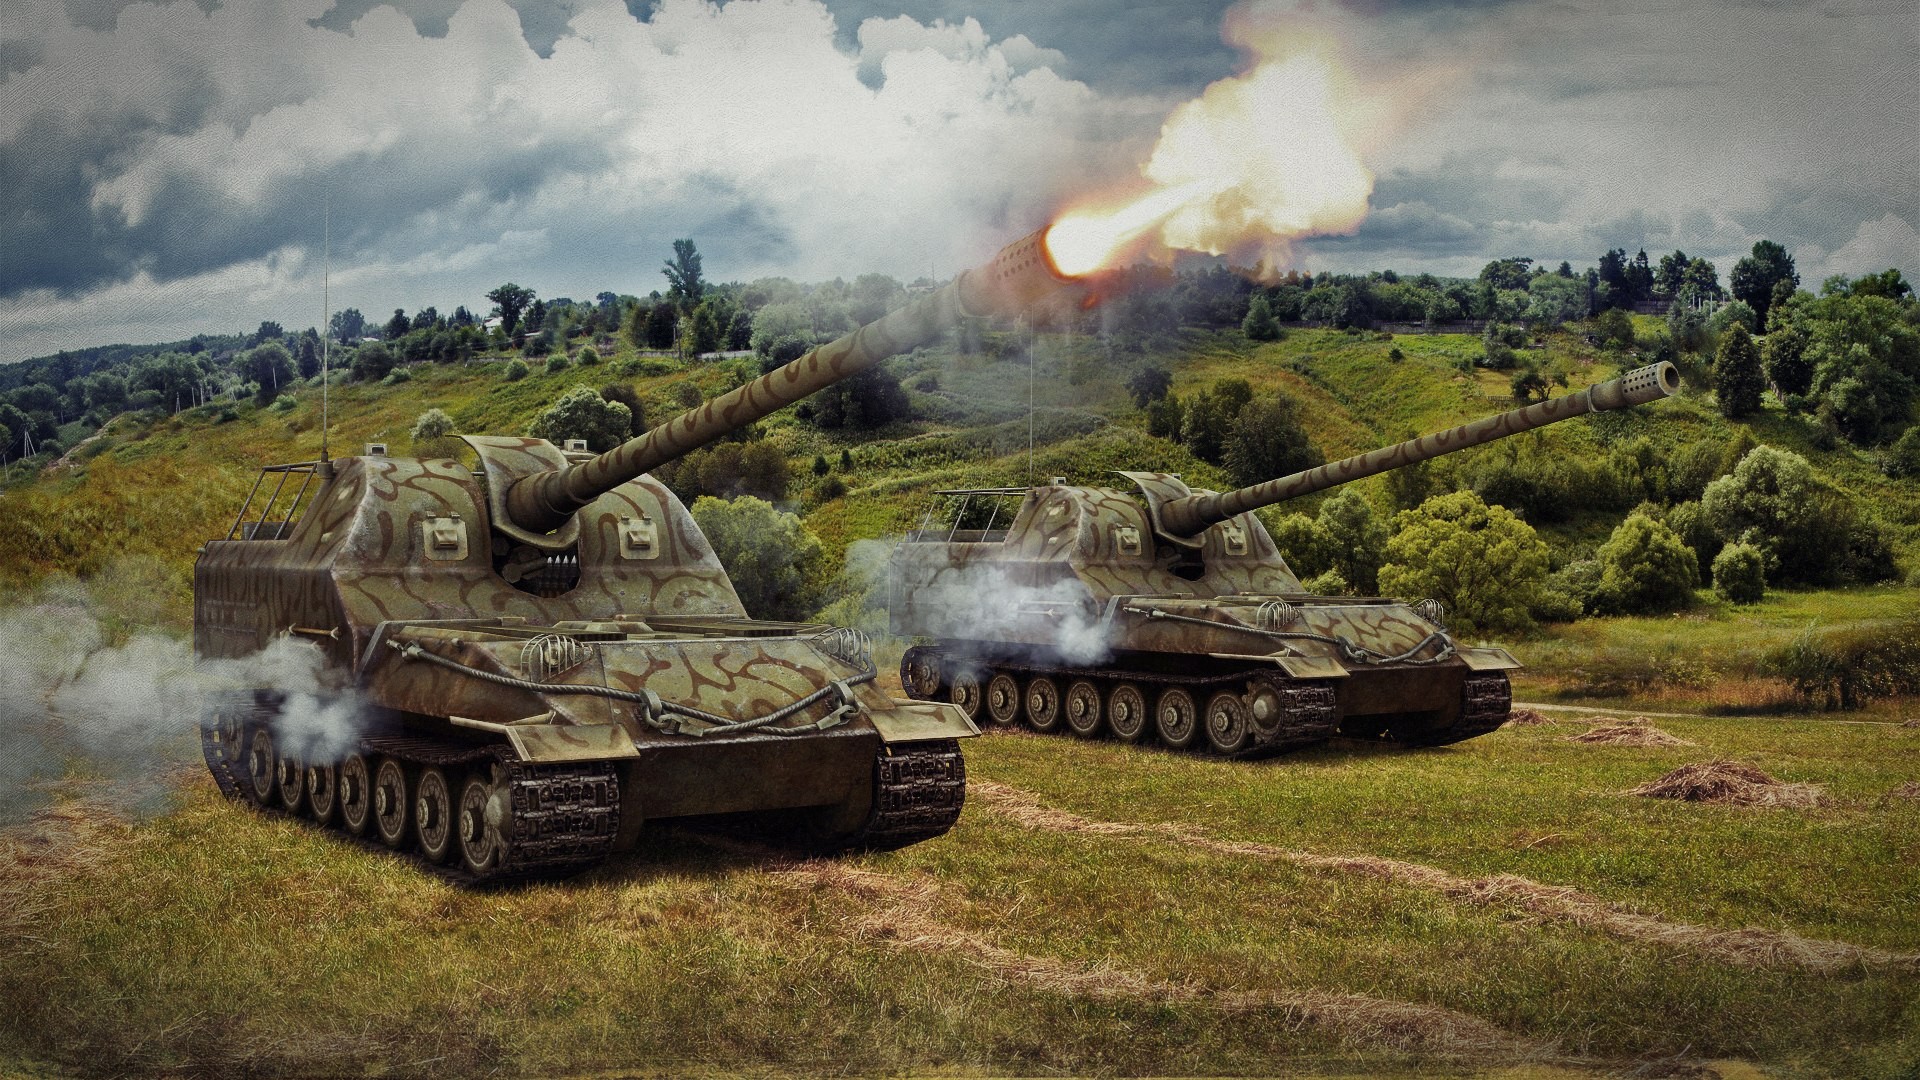 General 1920x1080 World of Tanks tank wargaming video games